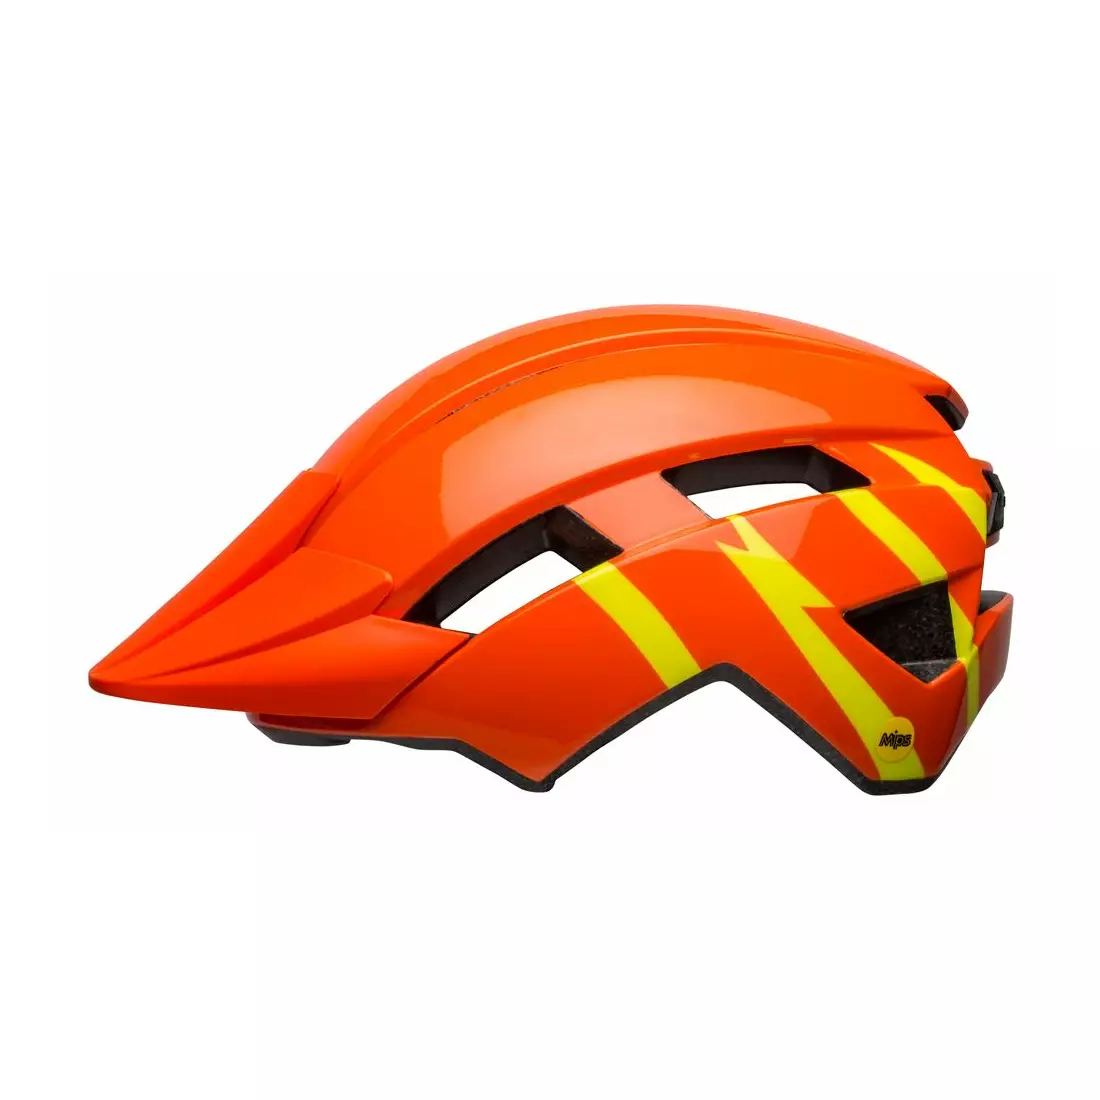 BELL children's/junior bicycle helmet SIDETRACK II orange yellow BEL-7127738